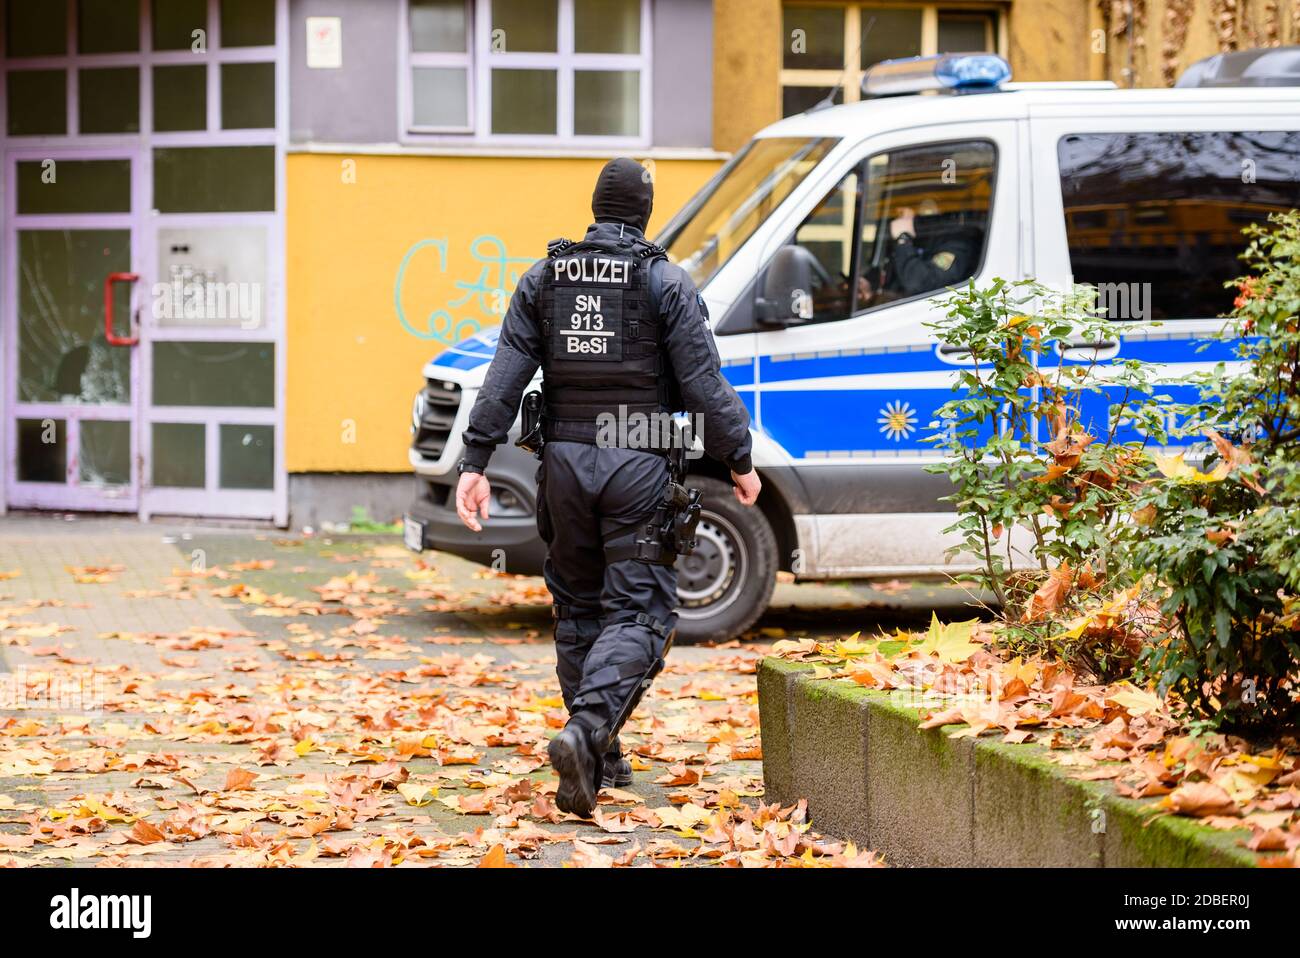 Germania, Berlino, 17 novembre 2020: La polizia può essere vista durante le  incursioni in cui la polizia ha arrestato tre sospetti. Più di 1600  poliziotti sotto la guida di Soko 'Epaulette' sono